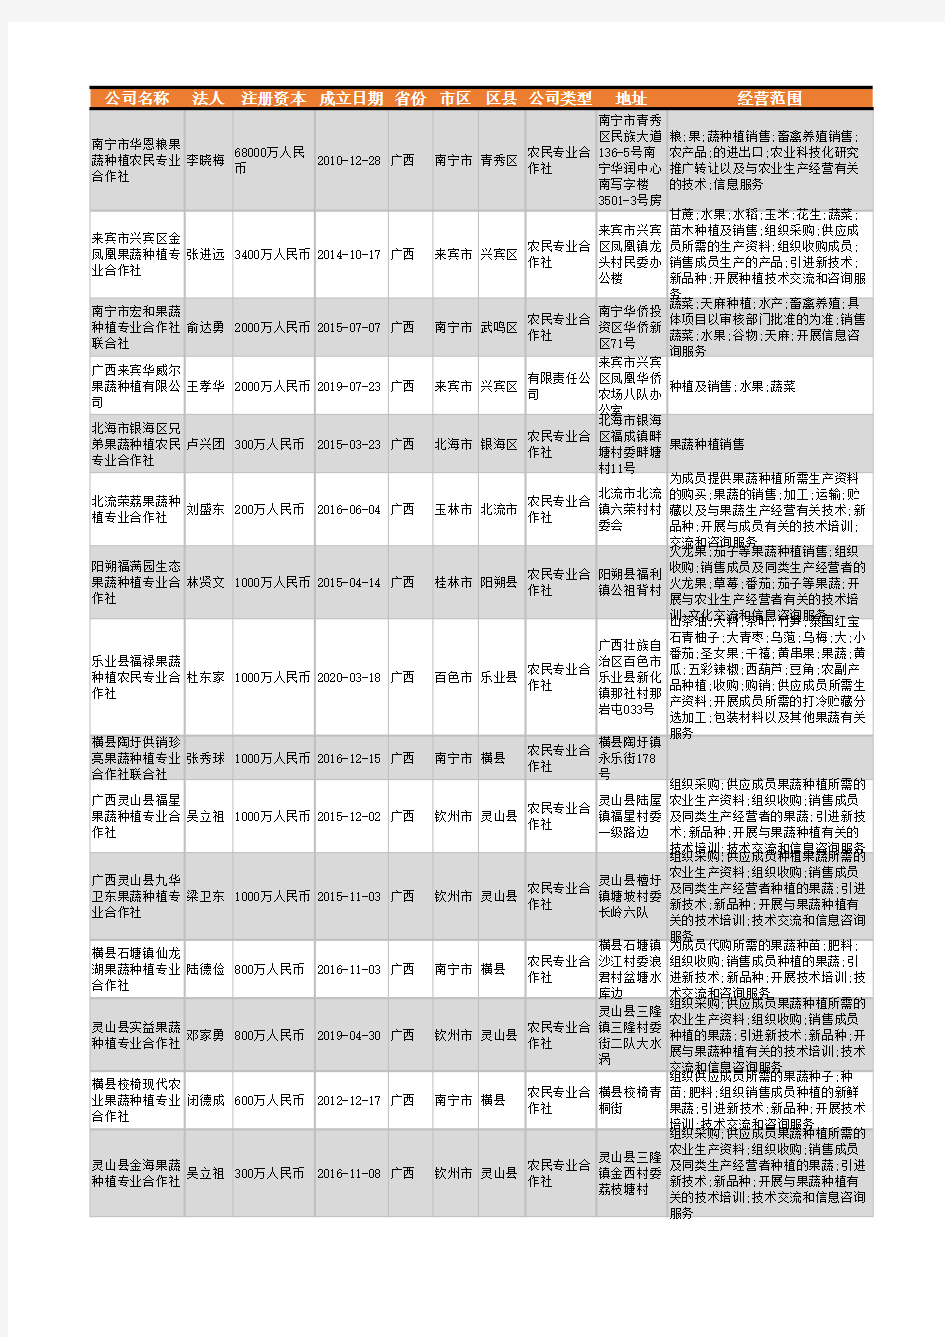 2021年广西省果蔬种植行业企业名录1799家